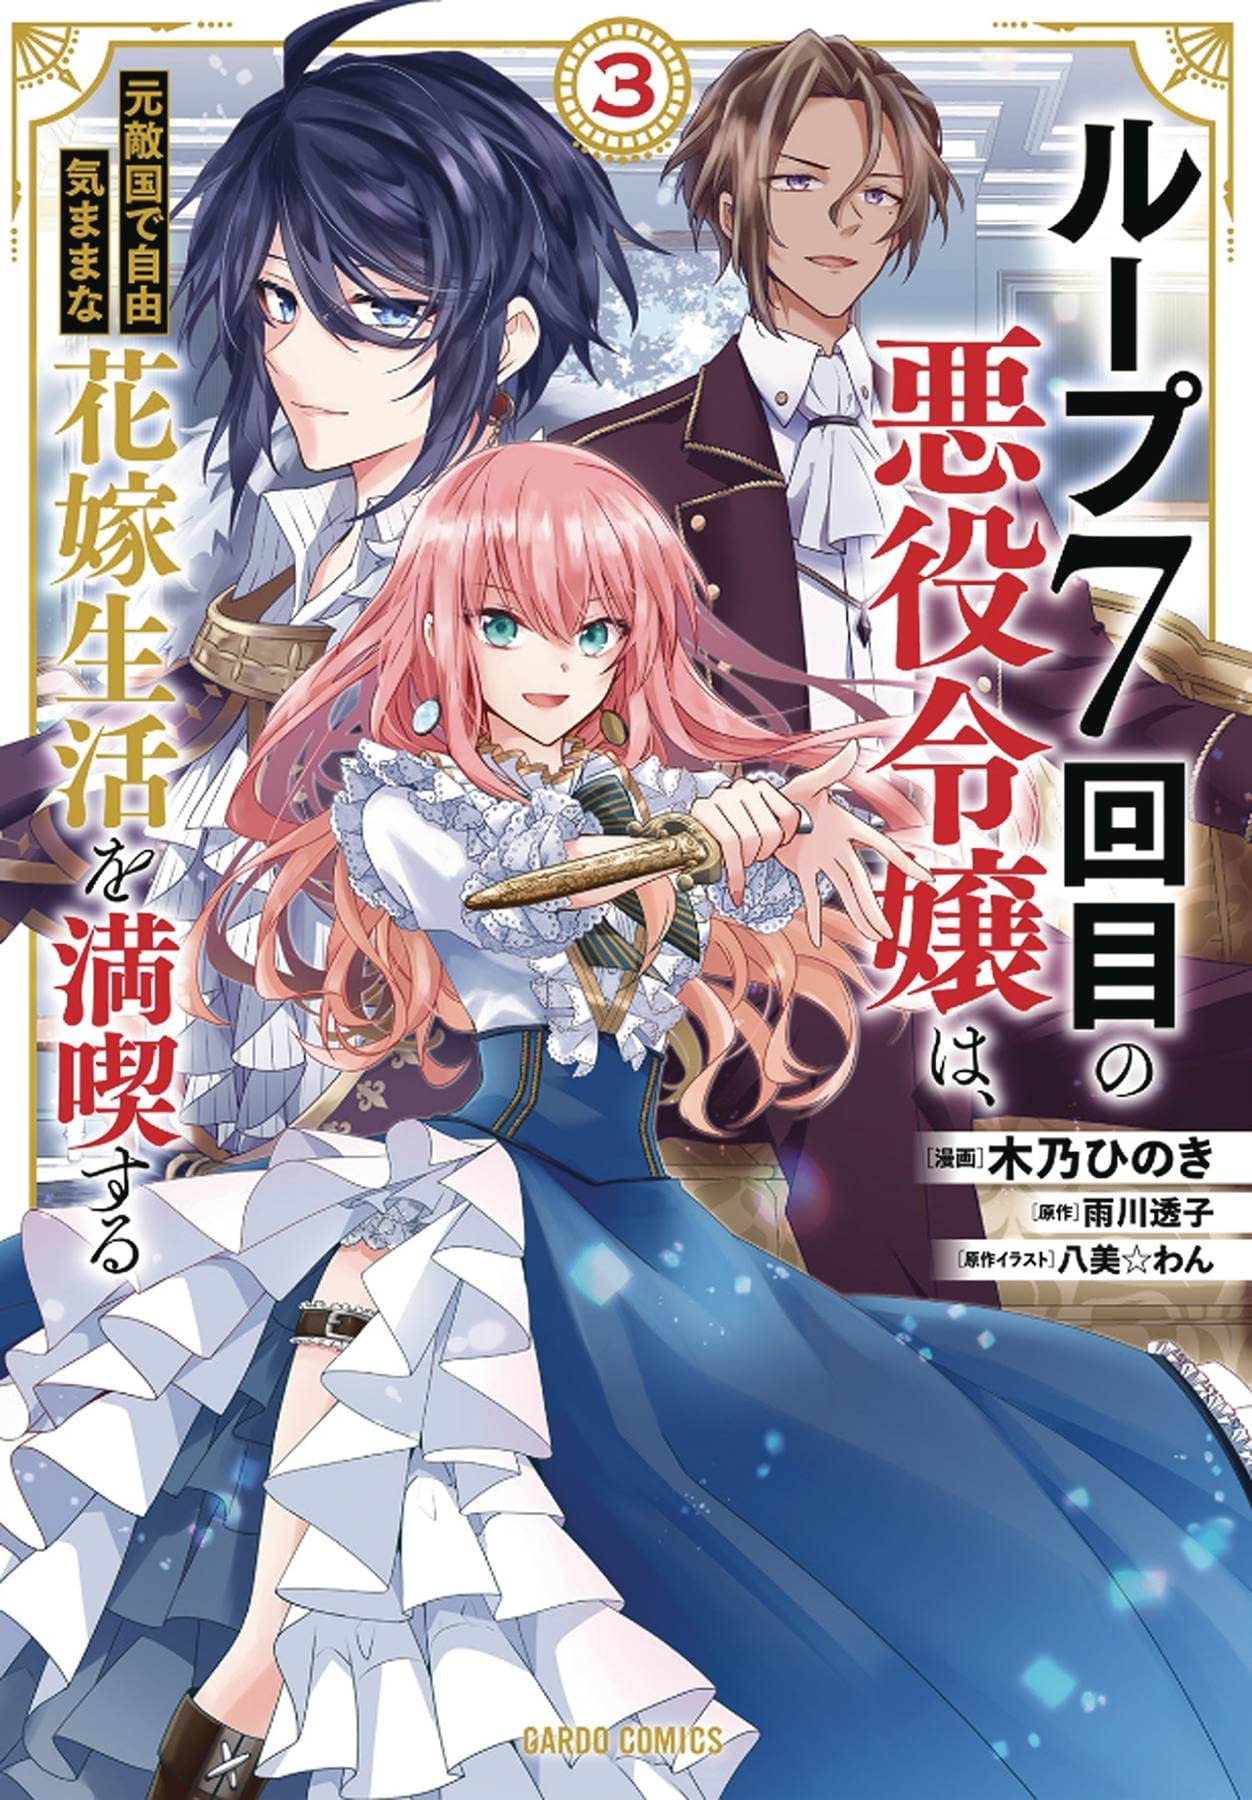 Classroom of the Elite: Horikita (Manga) Vol. 2